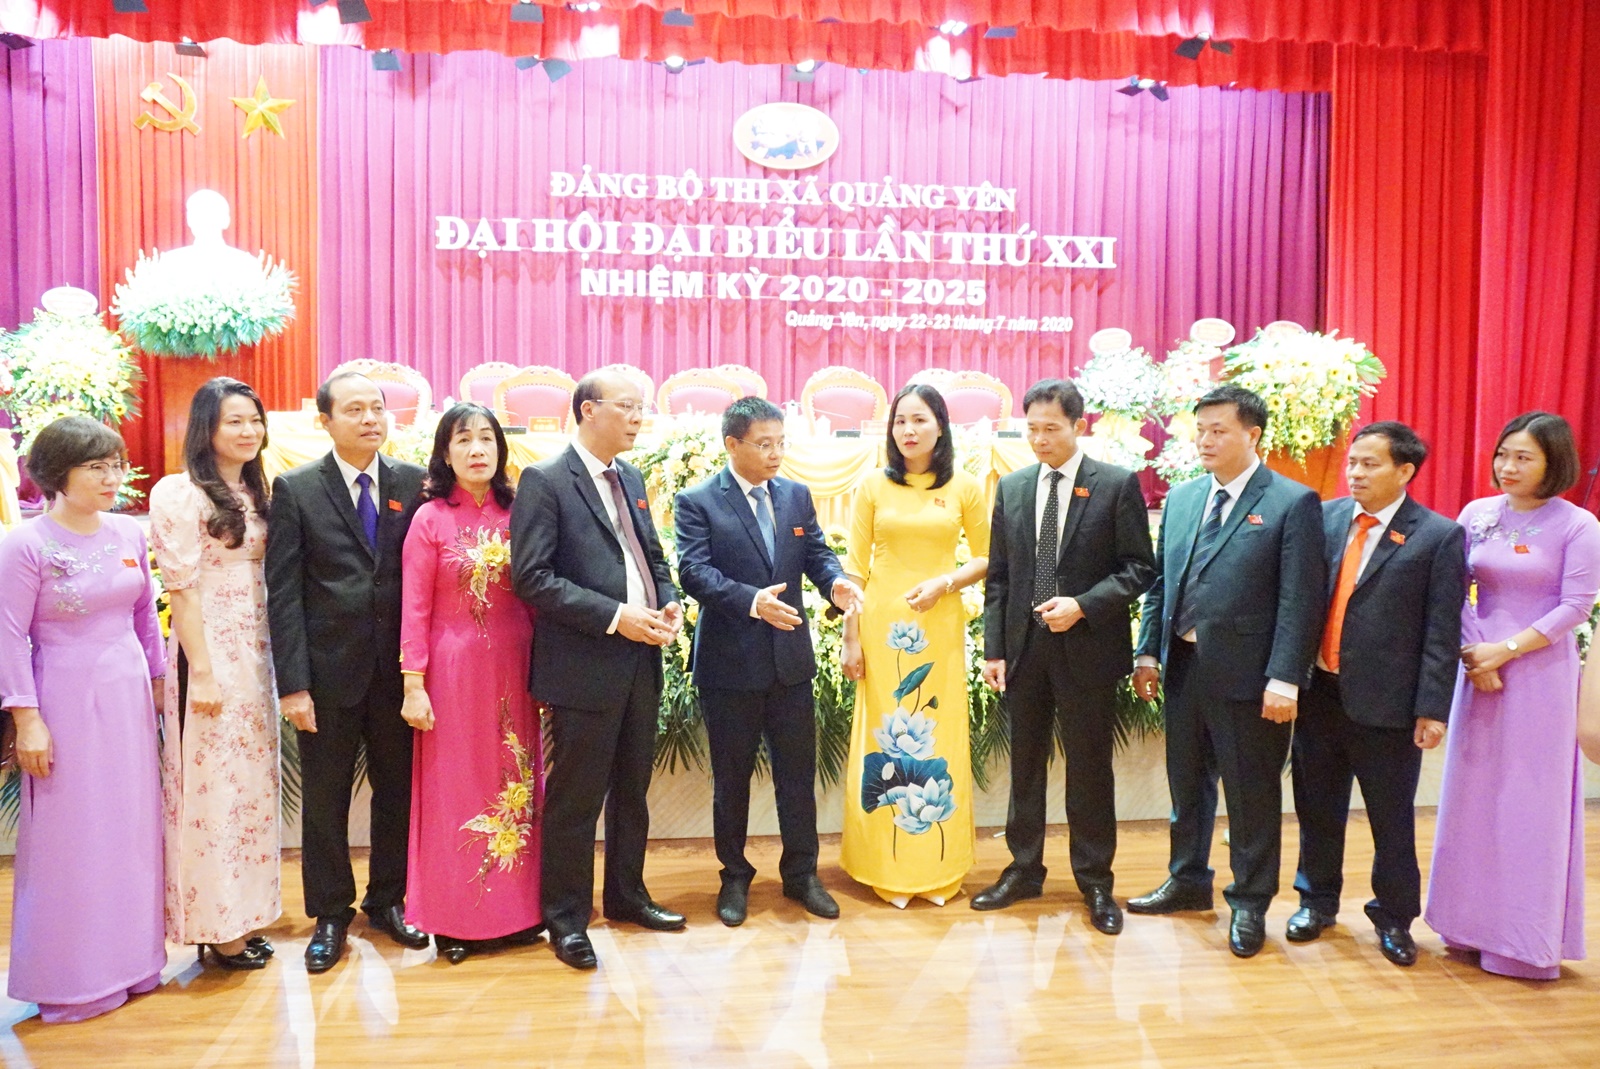 Đồng chí Nguyễn Văn Thắng, Phó Bí thư Tỉnh ủy, Chủ tịch UBND tỉnh cùng các đồng chí lãnh đạo tỉnh trao đổi với các đại biểu về dự đại hội.